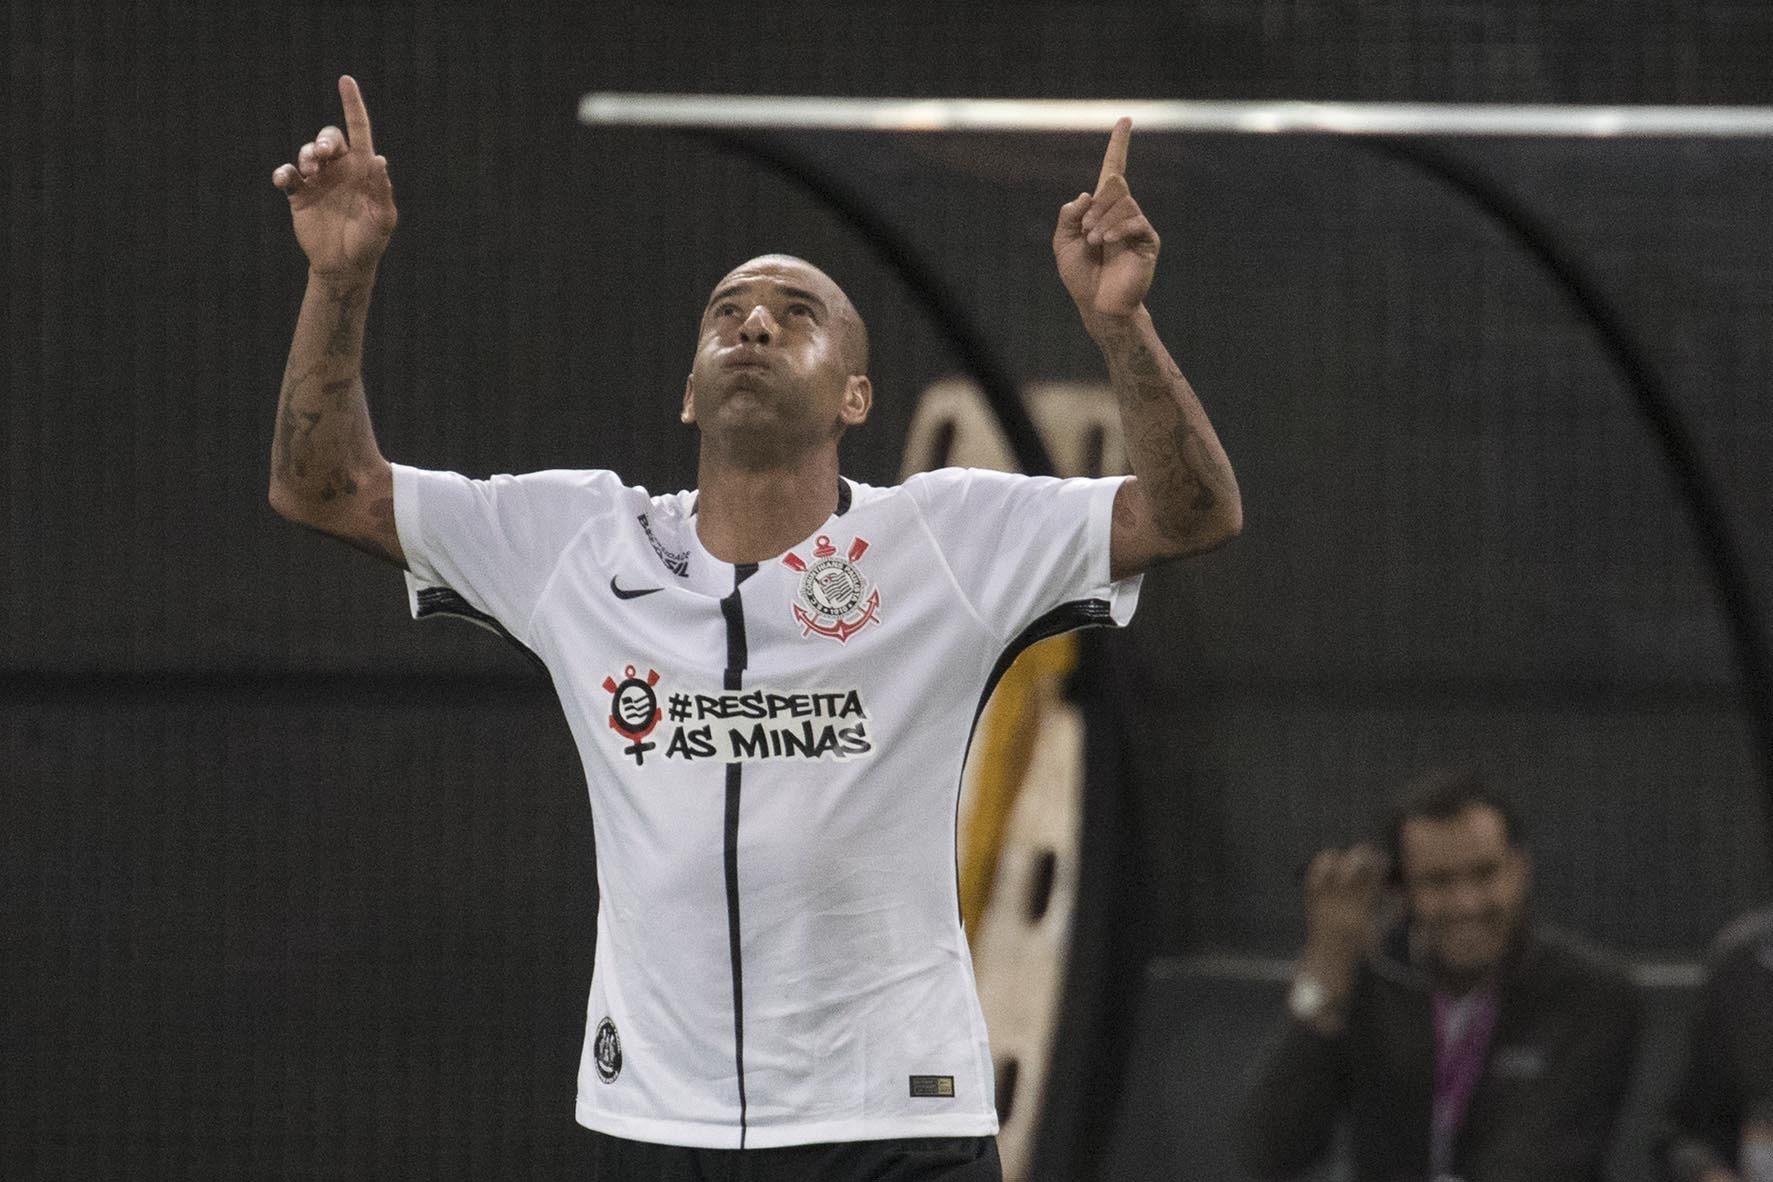 Campeão brasileiro, da Libertadores e Mundial com o Corinthians entre 2011 e 2012, Emerson Sheik passou depois por Botafogo, Flamengo e Ponte Preta antes de retornar ao Alvinegro para encerrar a carreira, em 2018.